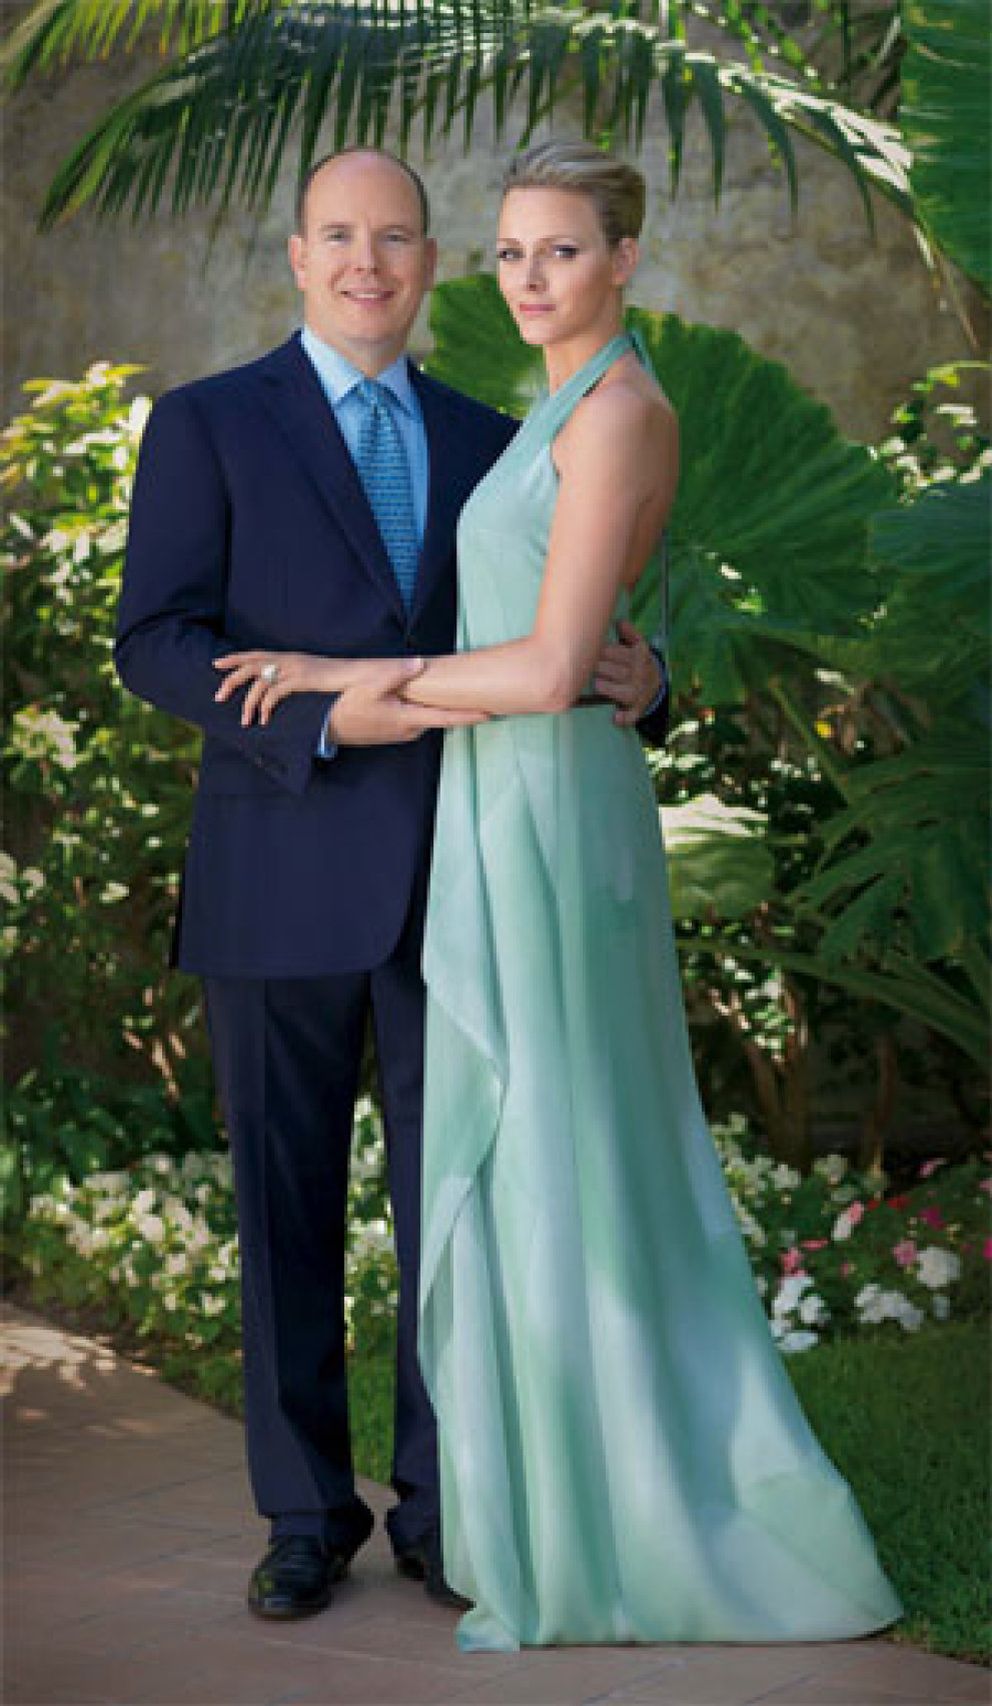 Foto: La boda de Alberto de Mónaco se celebrará el próximo verano